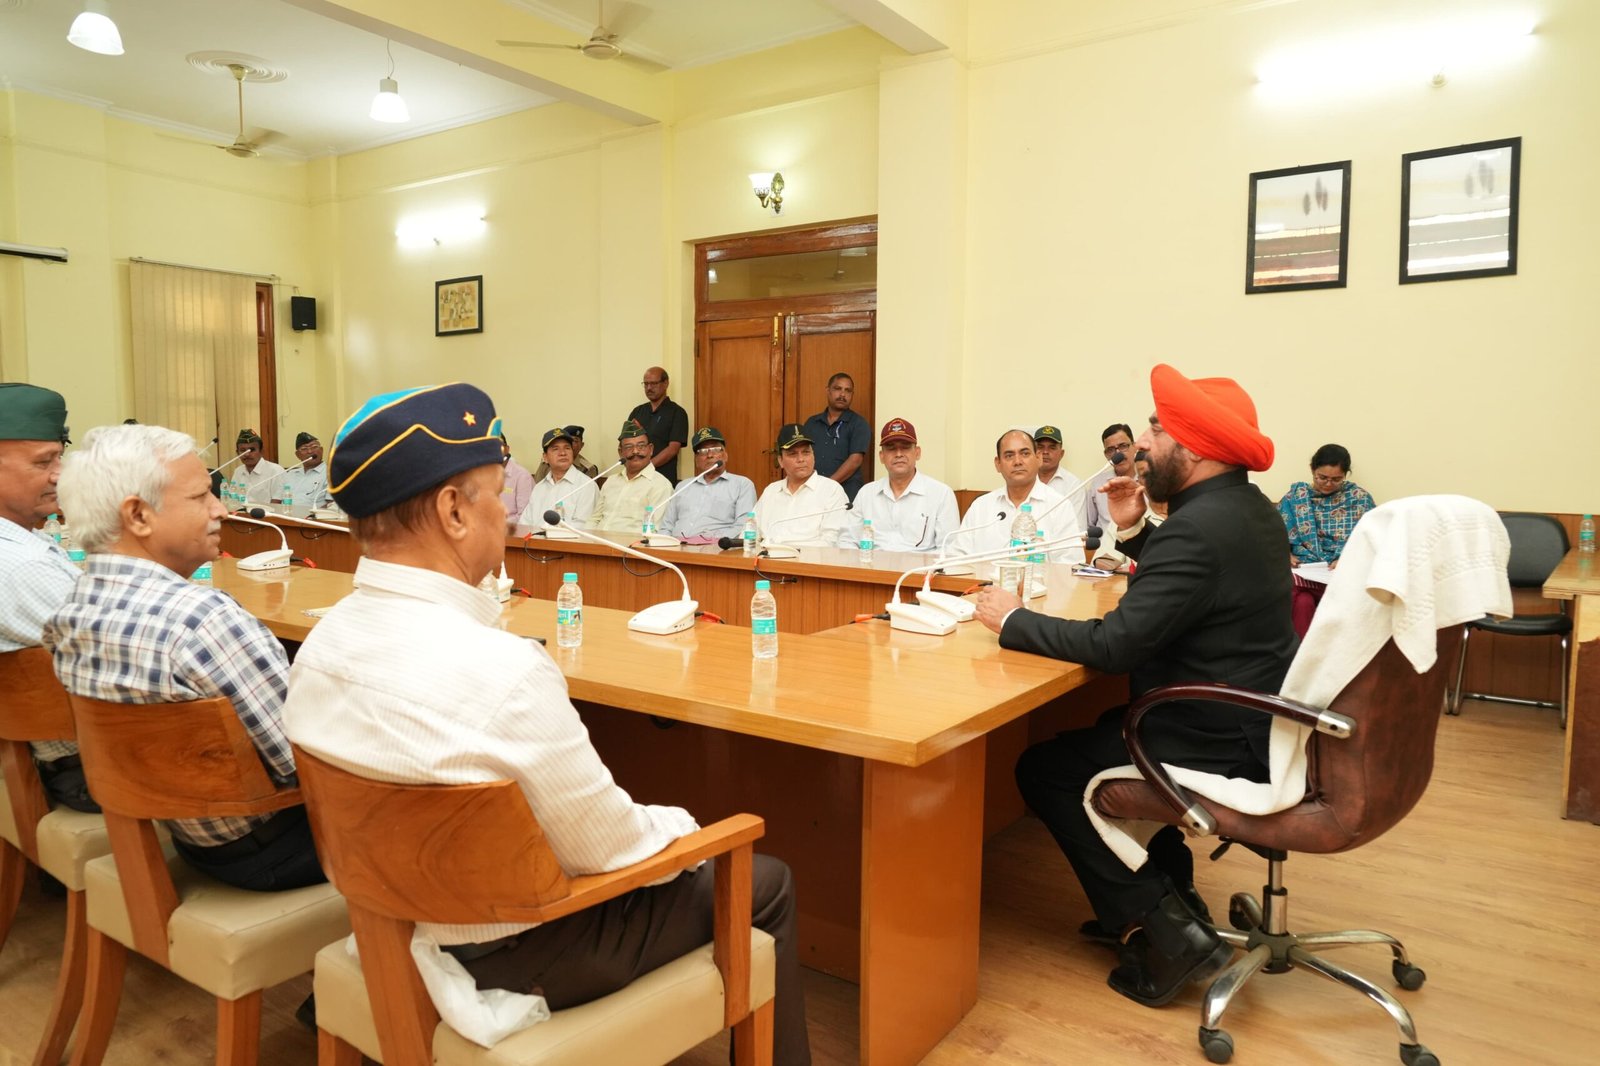 नैनीताल : राज्यपाल लेफ्टिनेंट जनरल गुरमीत सिंह (से नि) ने पूर्व सैनिकों के साथ की बैठक, कहा उनकी समस्याओं का समाधान करना बेहद जरूरी